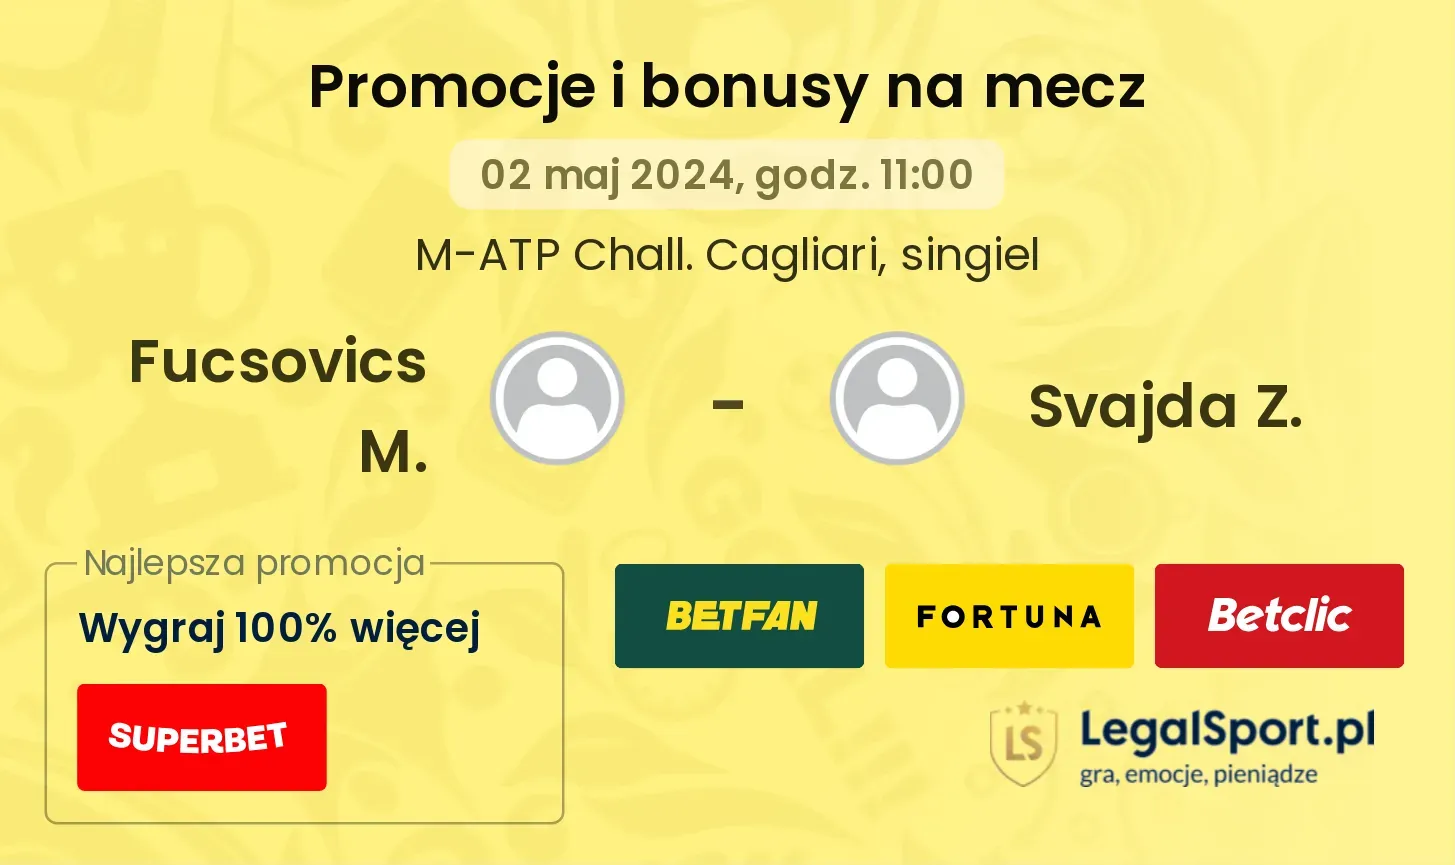 Fucsovics M. - Svajda Z. promocje bonusy na mecz